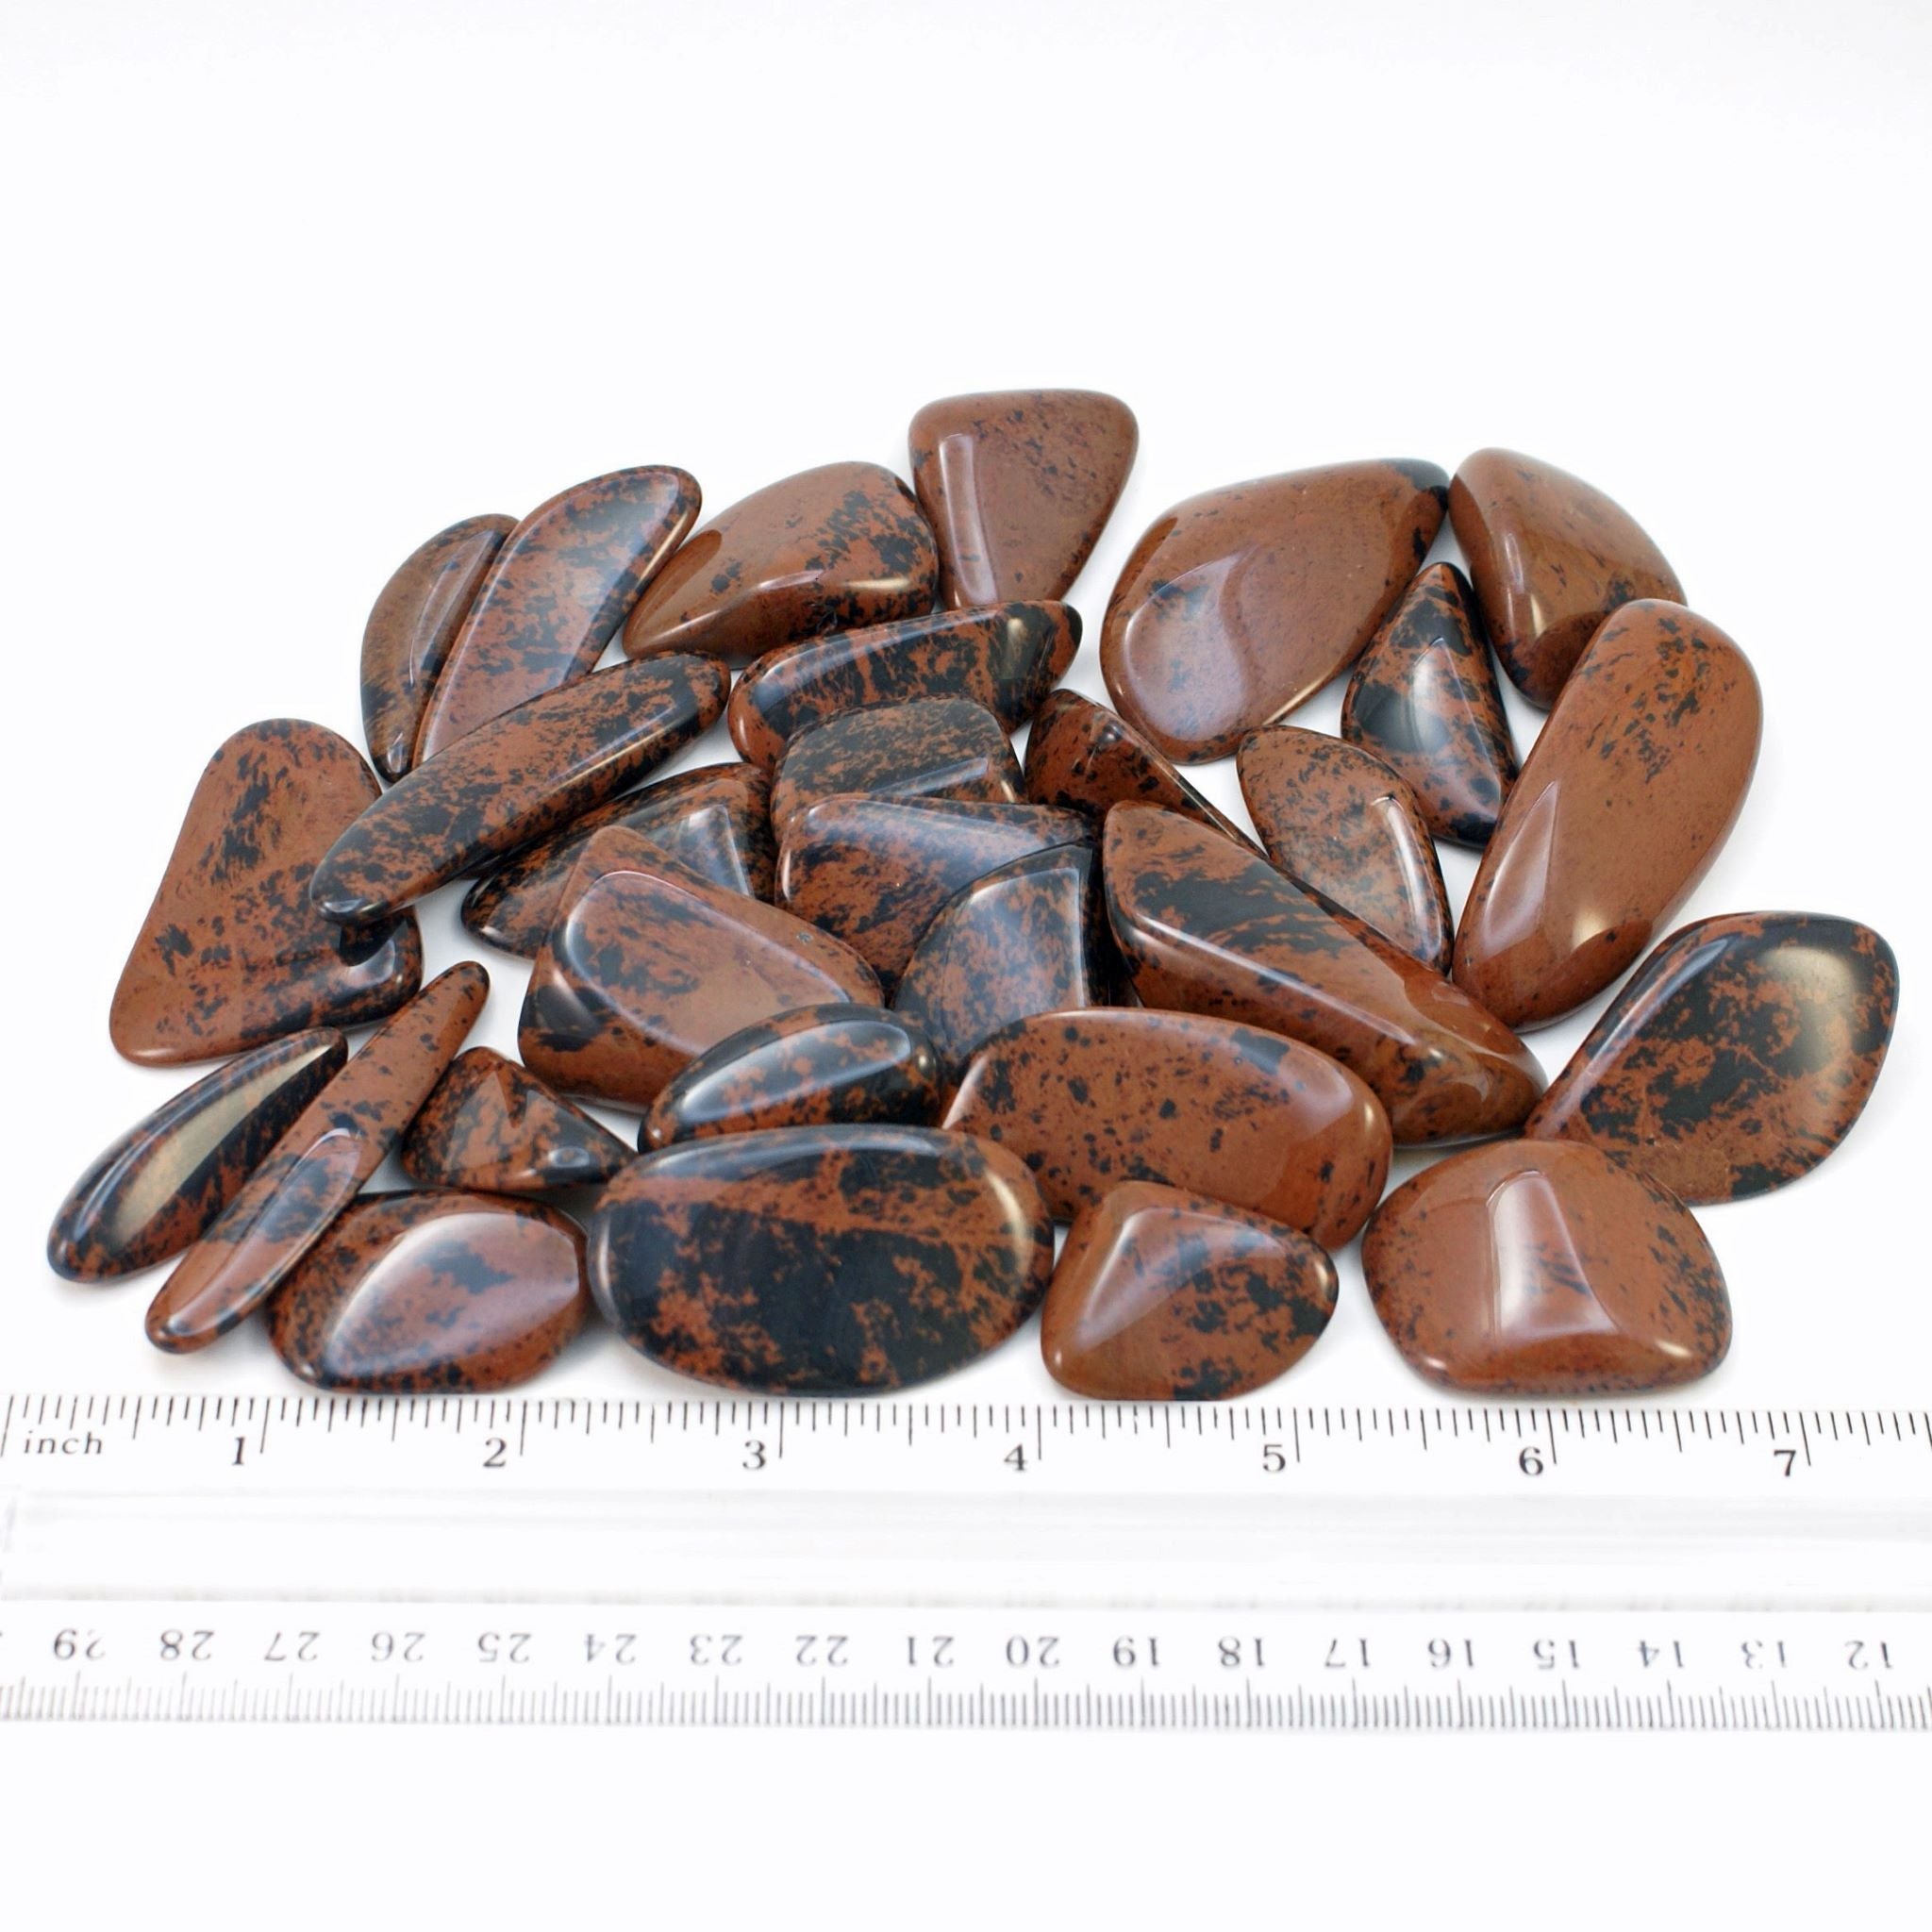 Mahogany Obsidian tumbled stones with ruler